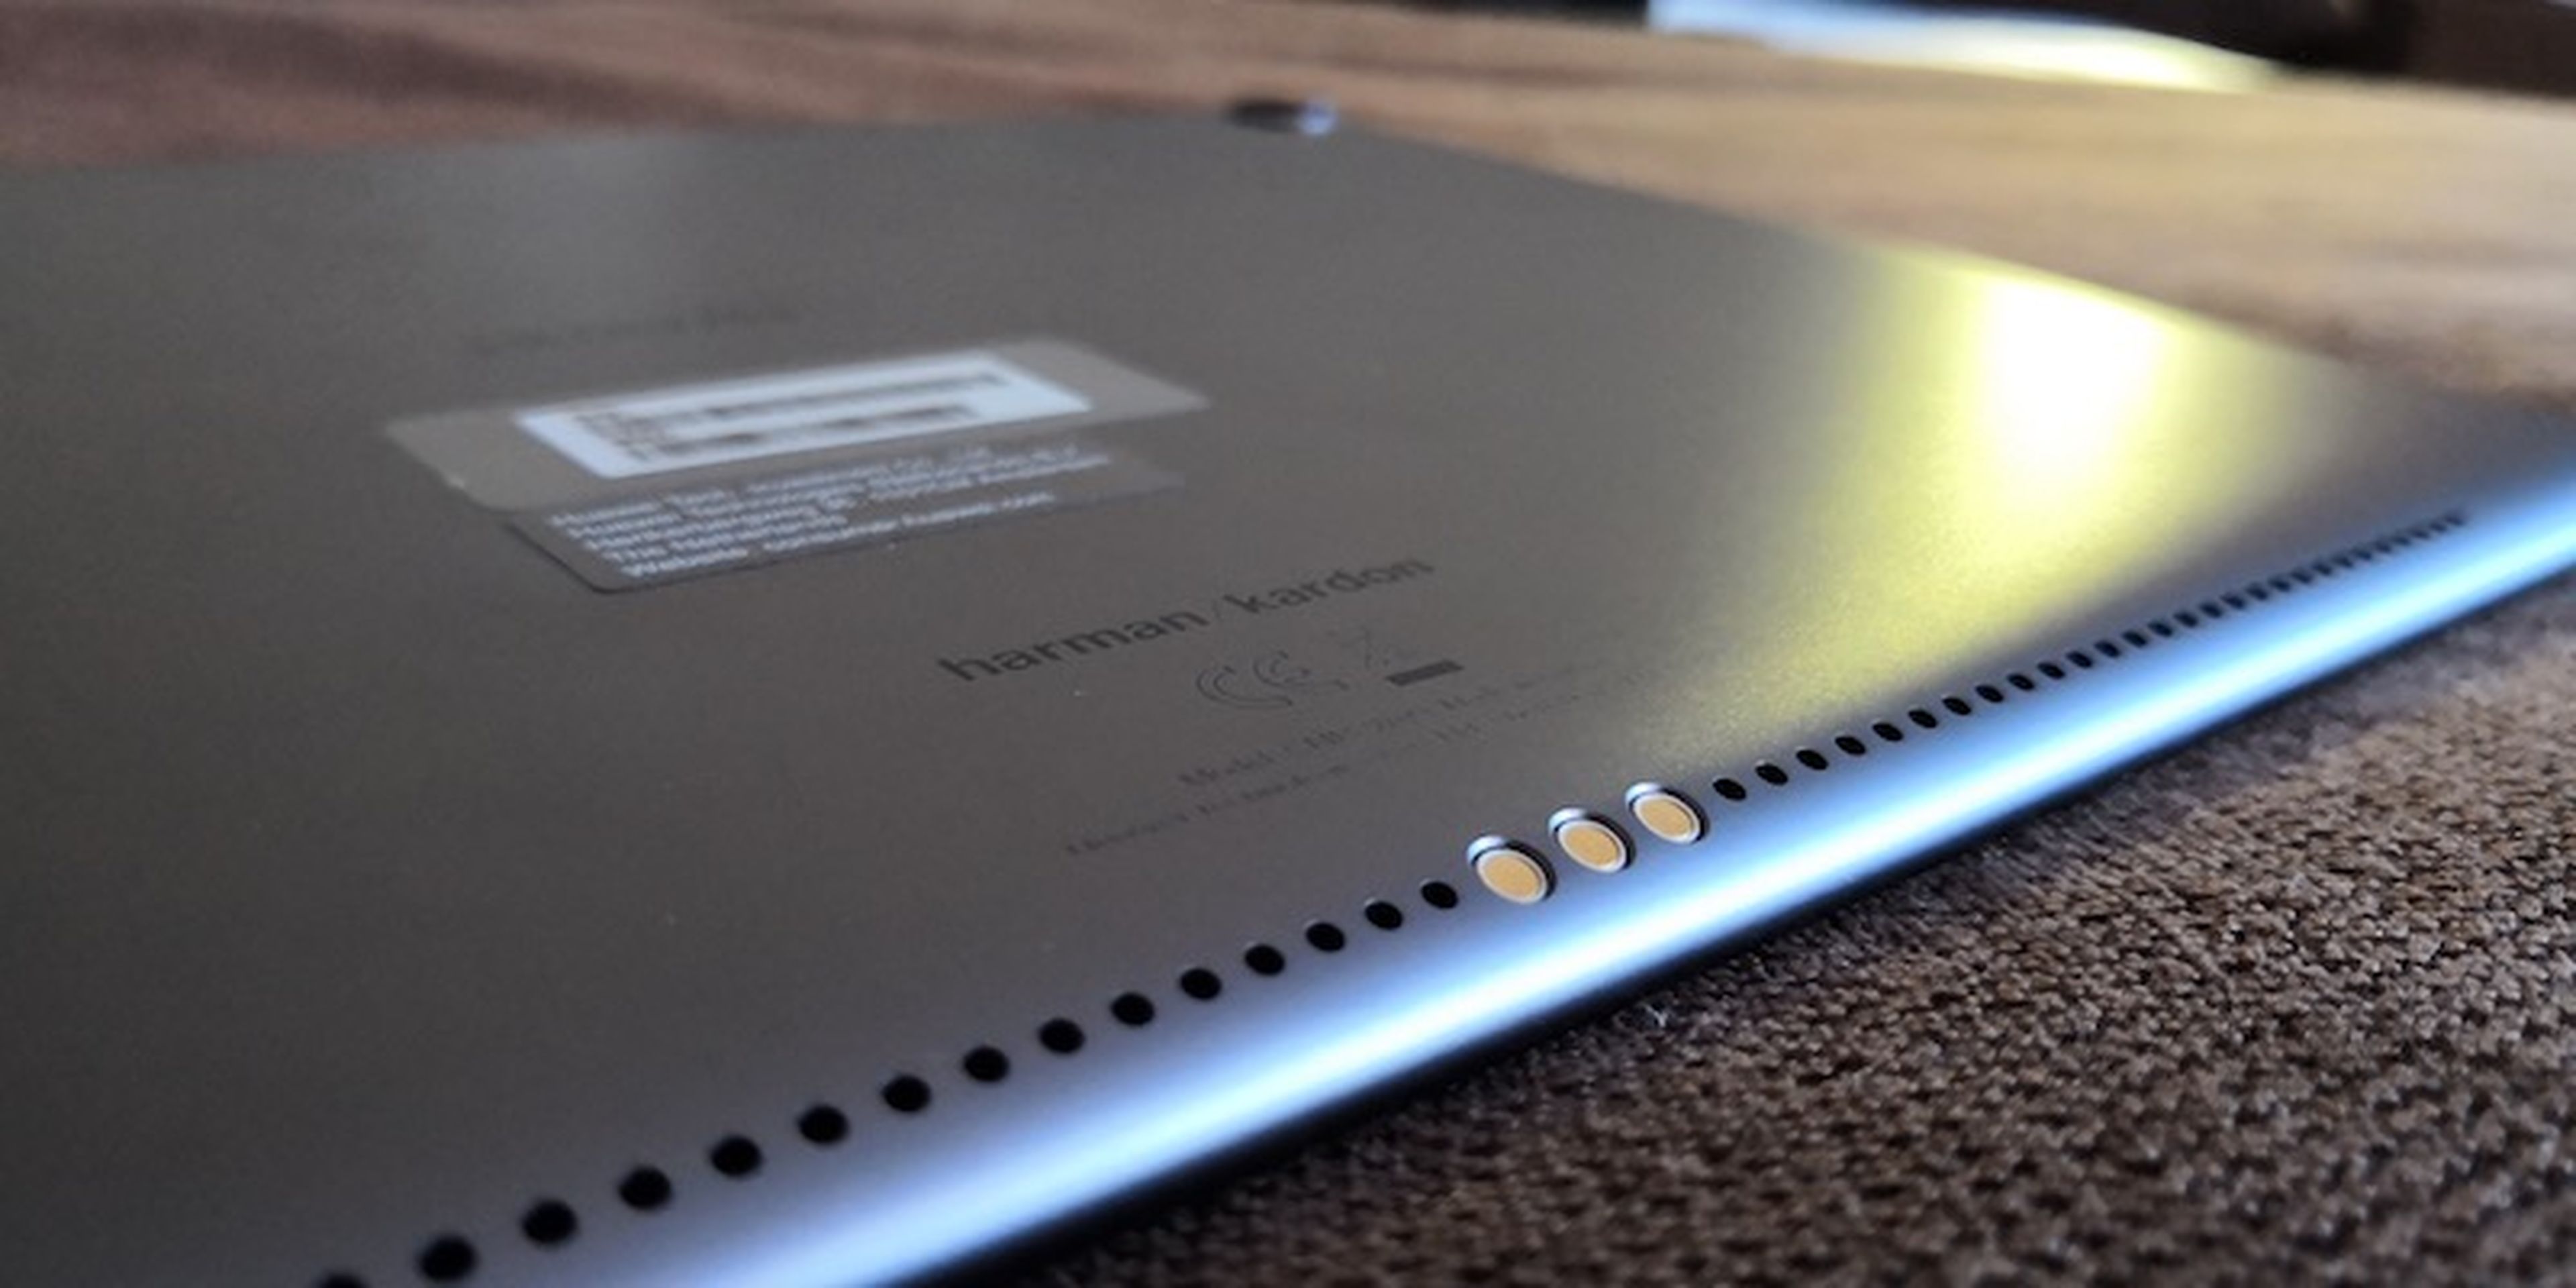 MediaPad M5 10, impresiones con la nueva tablet de Huawei